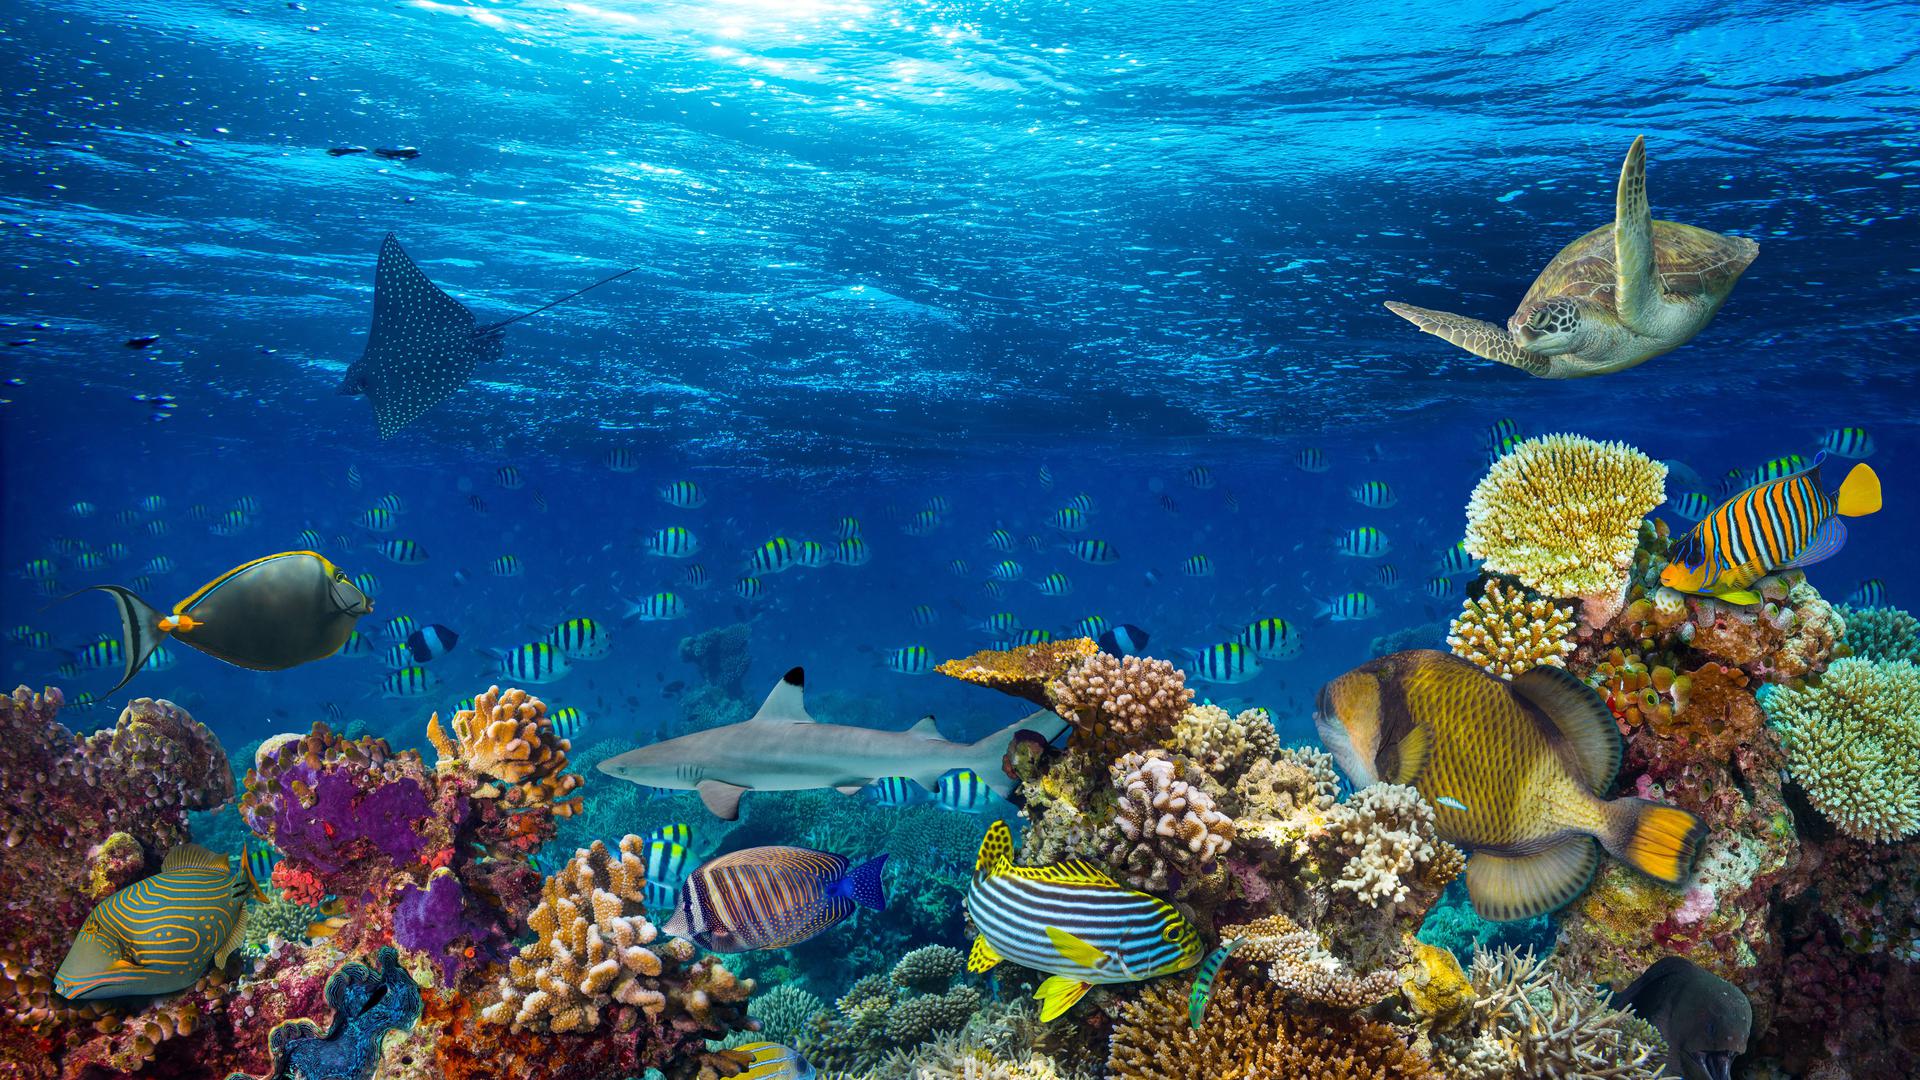 Farbenprächtiges Schauspiel unter Wasser:  Bunte Korallen sind typisch für tropische Gewässer. Sie bieten Schutz und Nahrung für unzählige Meeresbewohner. Doch die Versauerung der Ozeane und die steigenden Wassertemperaturen setzten ihnen zu. 